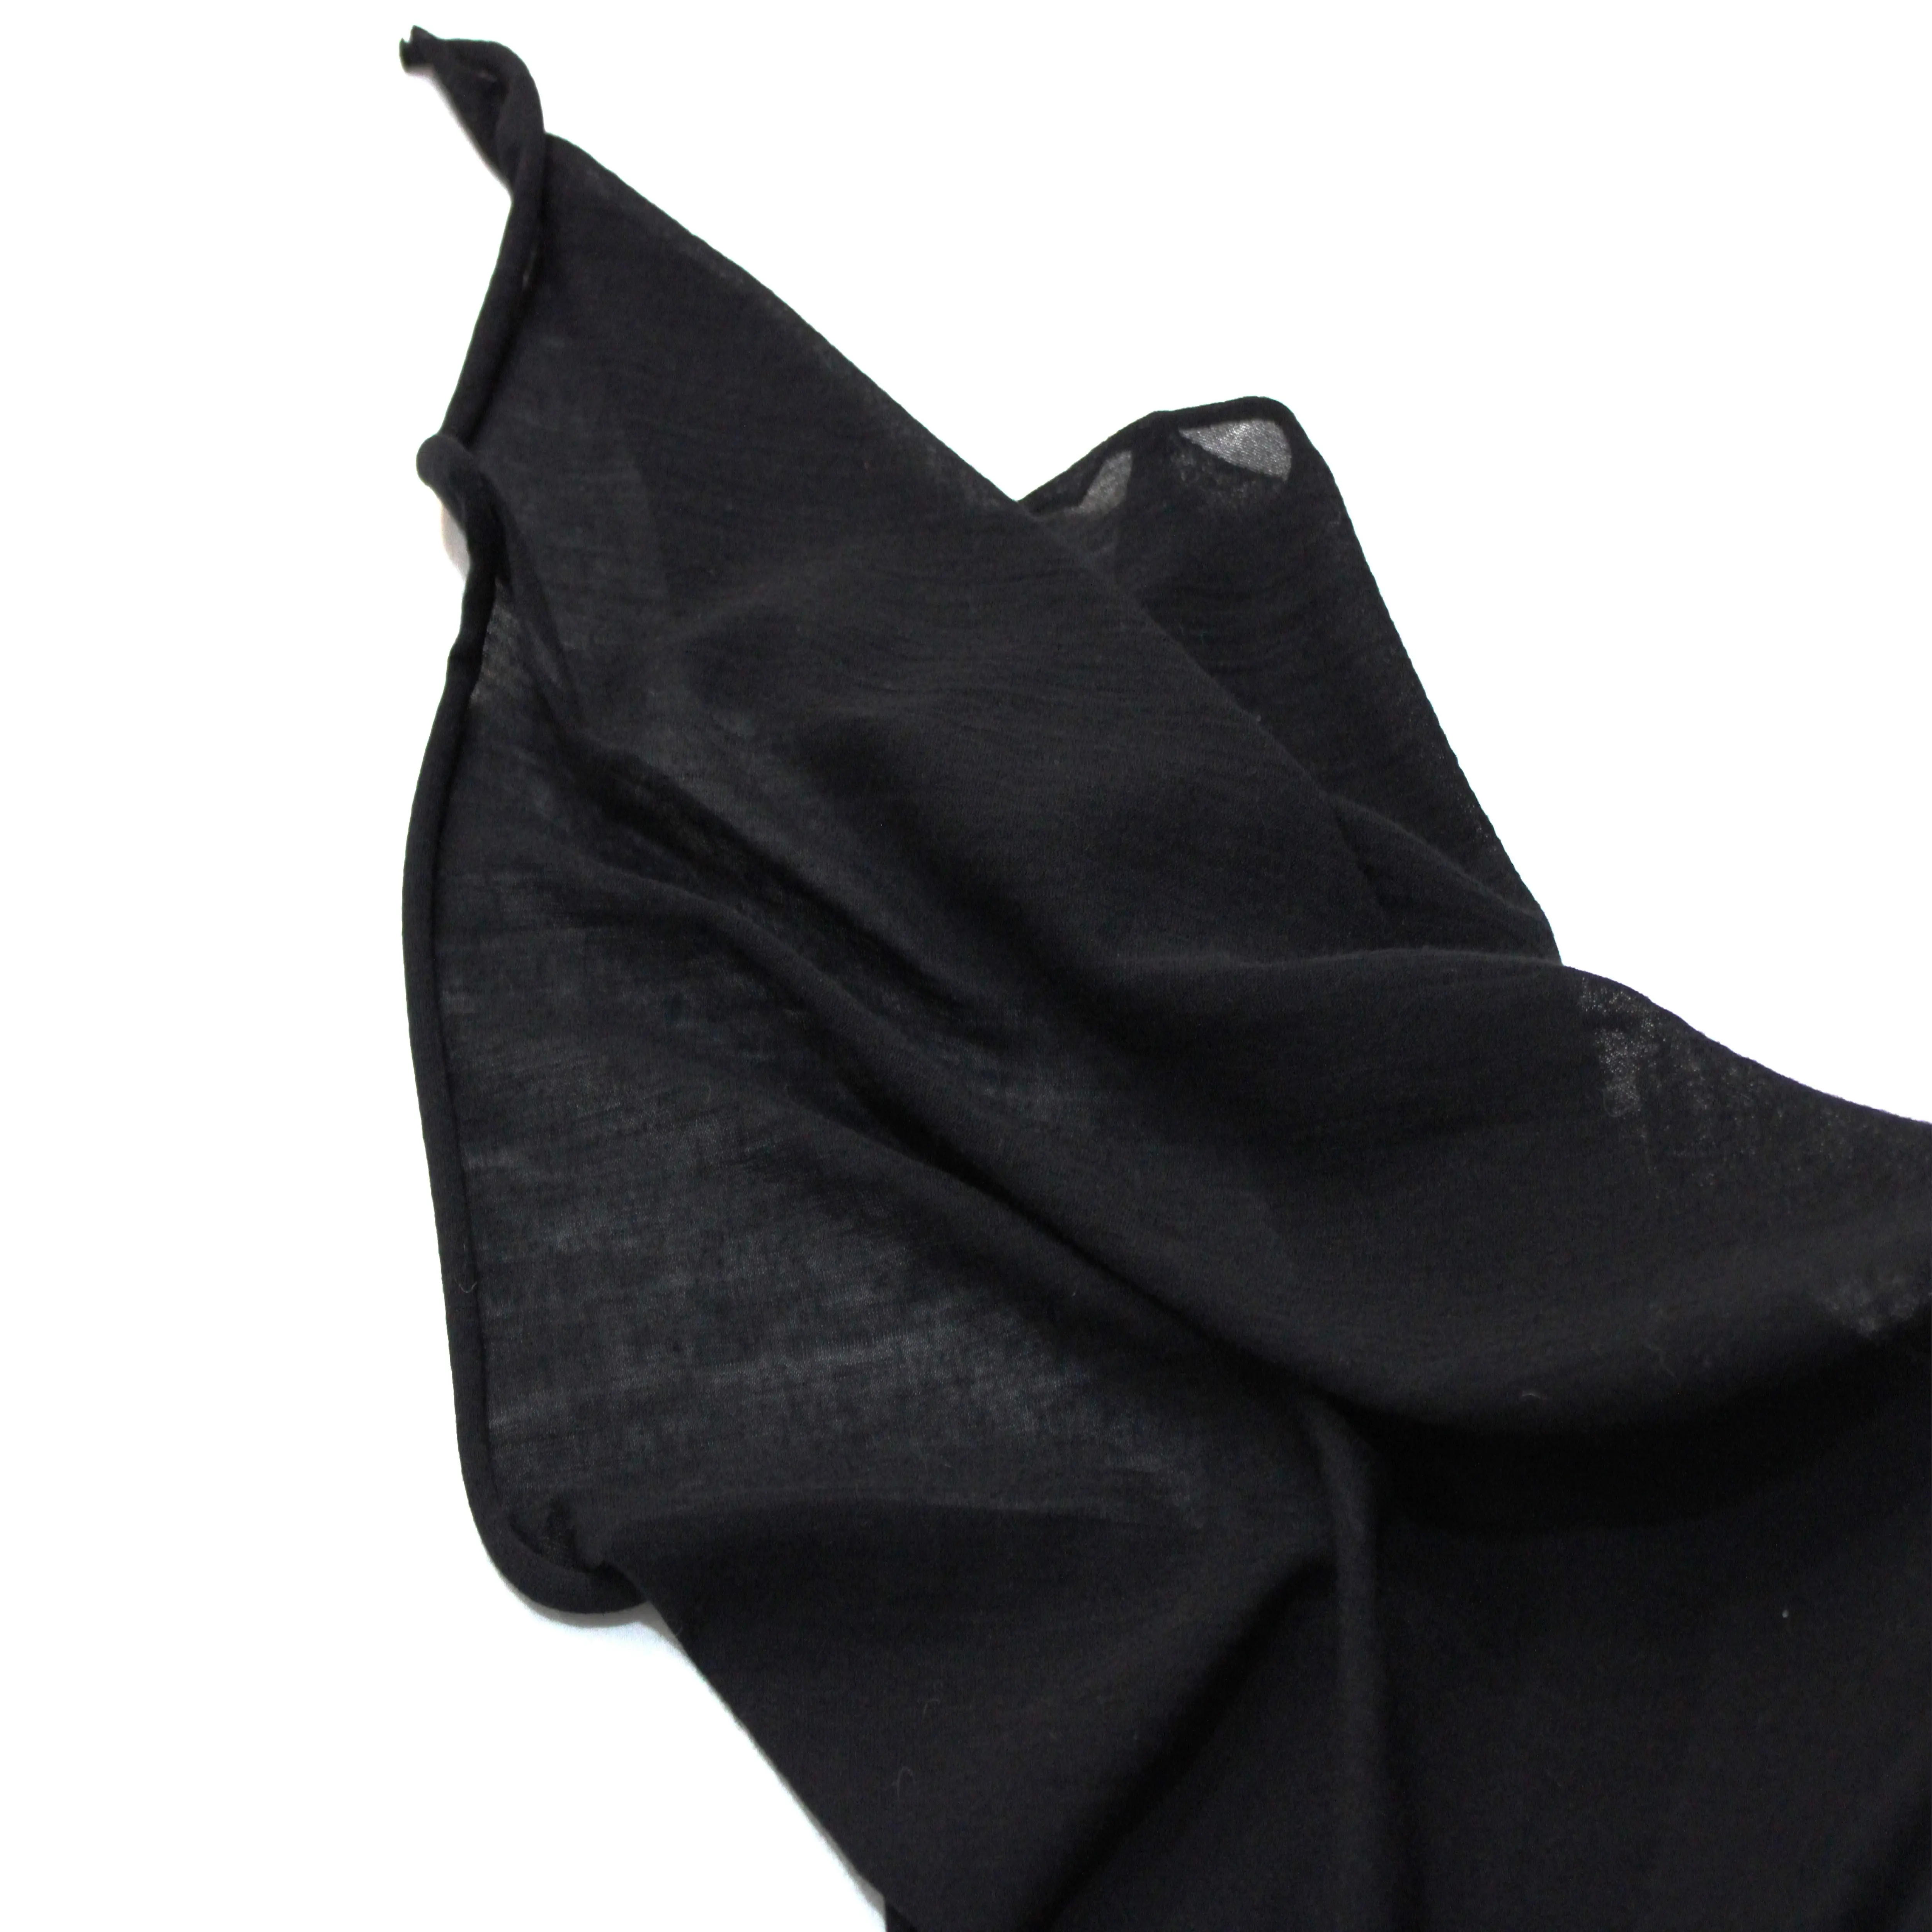 Stile caldo la migliore vendita a buon mercato prezzo leggero traspirante morbido nero indumenti estivi tessuto a maglia in fibra di bambù modale tinto in filo